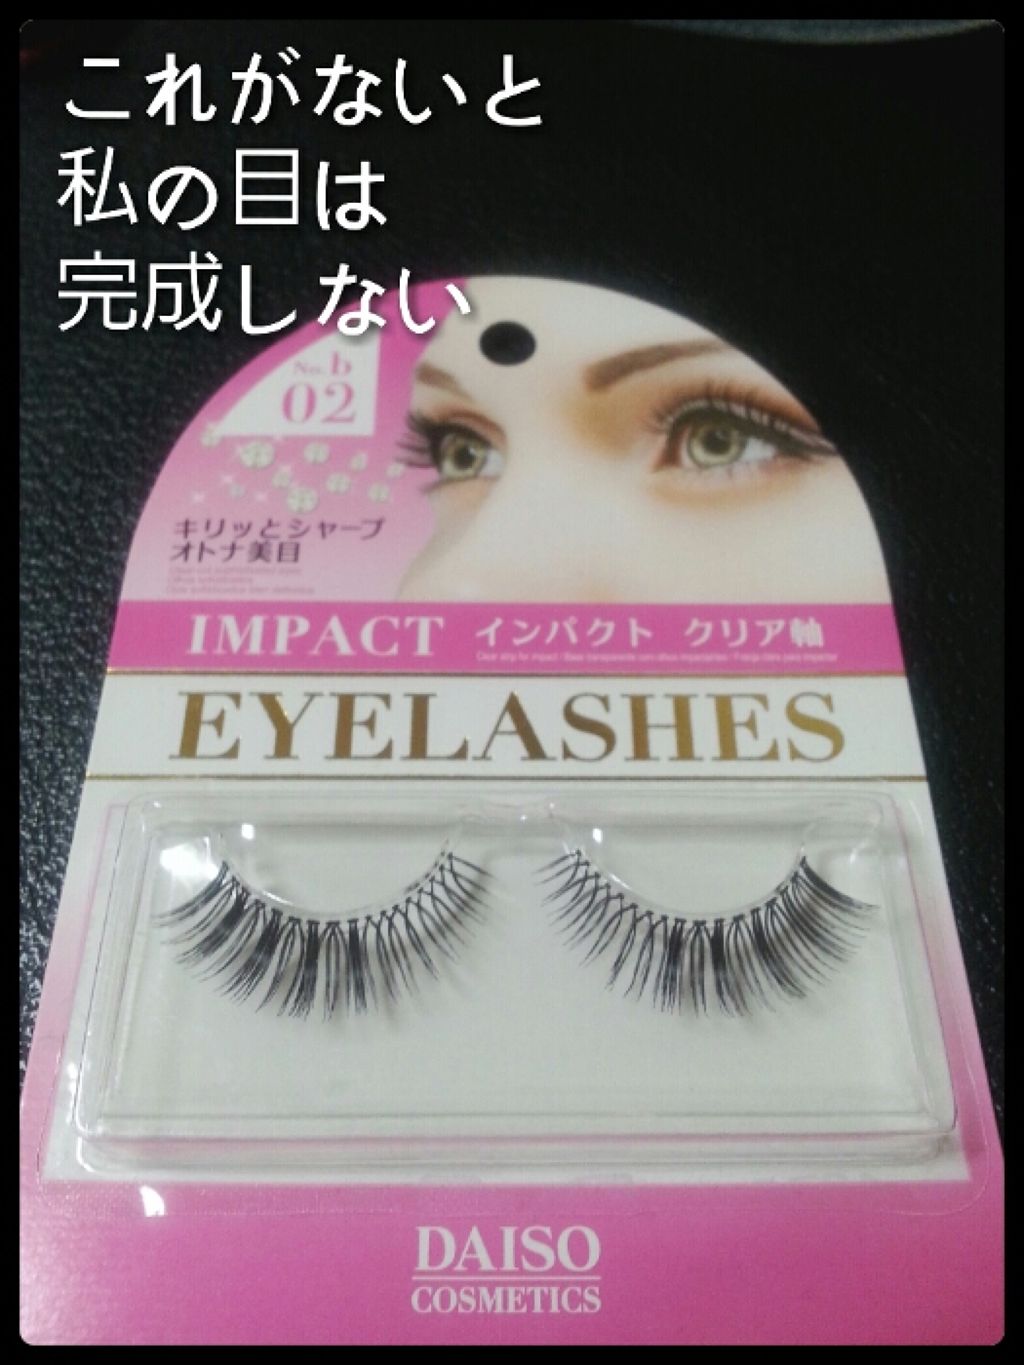 Eyelashes Daisoの口コミ 超優秀 100均で買えるおすすめつけまつげ ダイソーアイラッシュイ By はーこ 混合肌 30代前半 Lips